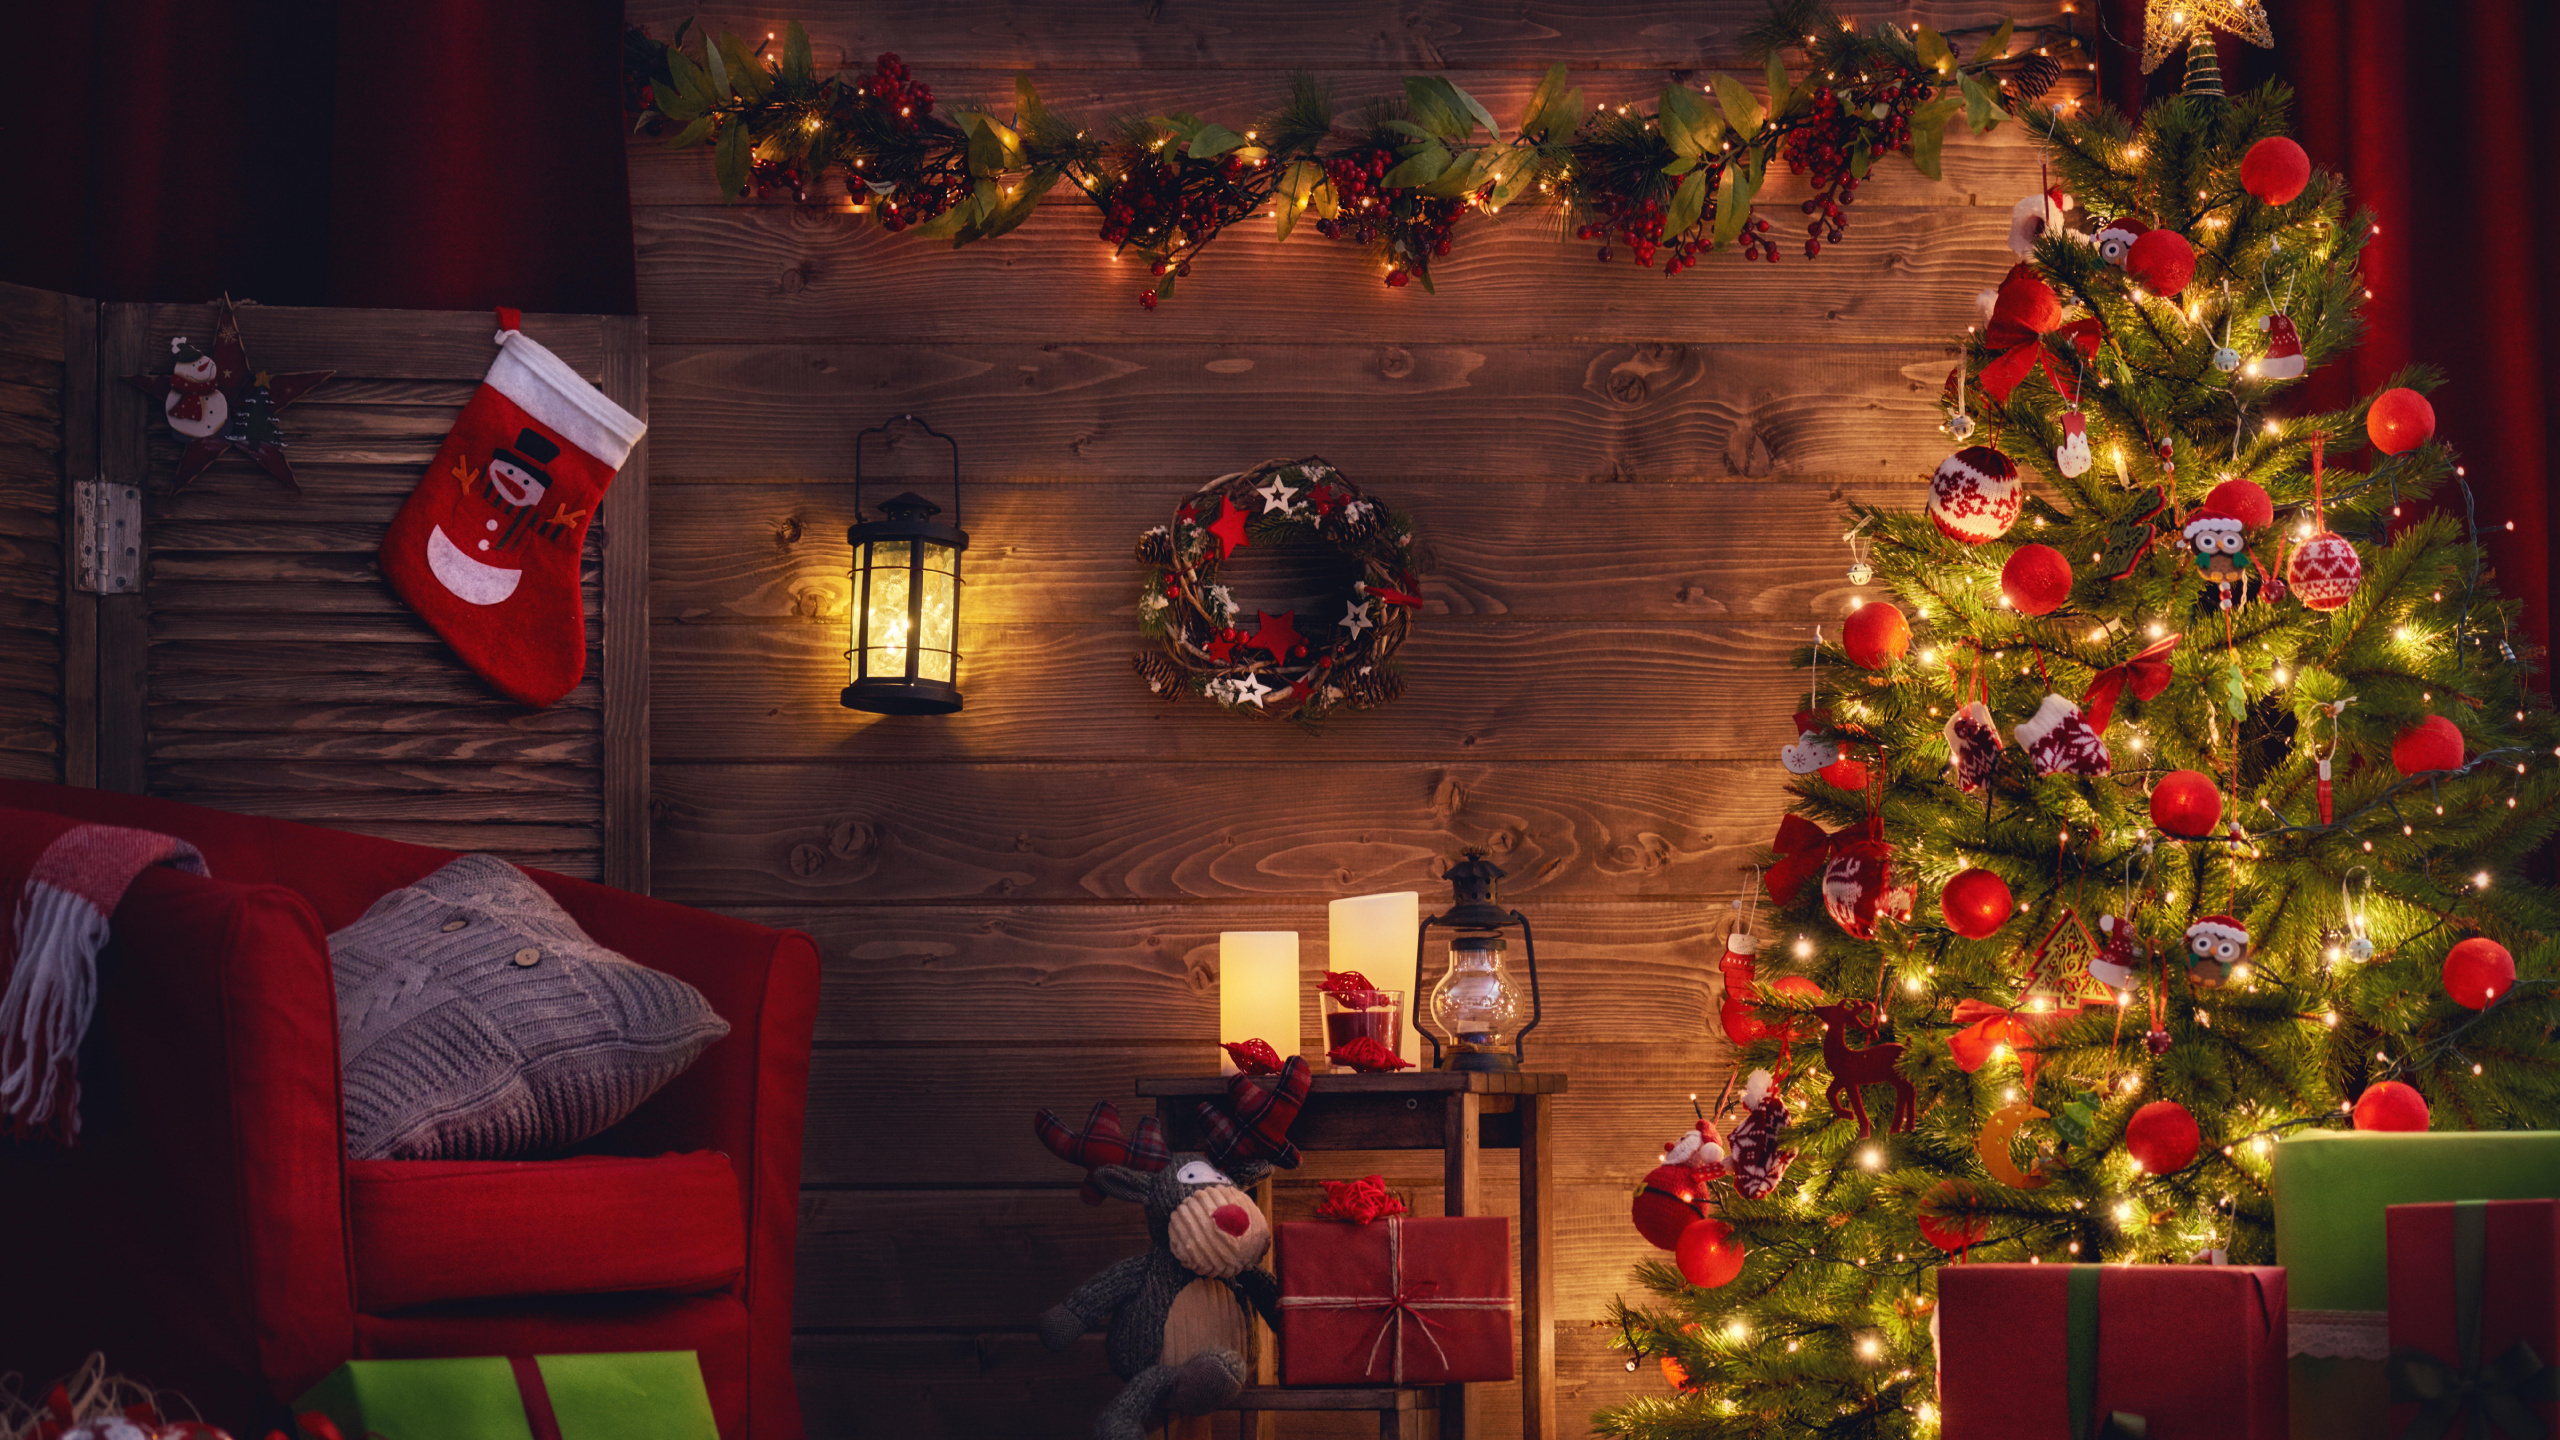 圣诞树, 圣诞节那天, 圣诞装饰, 圣诞节, 圣诞彩灯 壁纸 2560x1440 允许